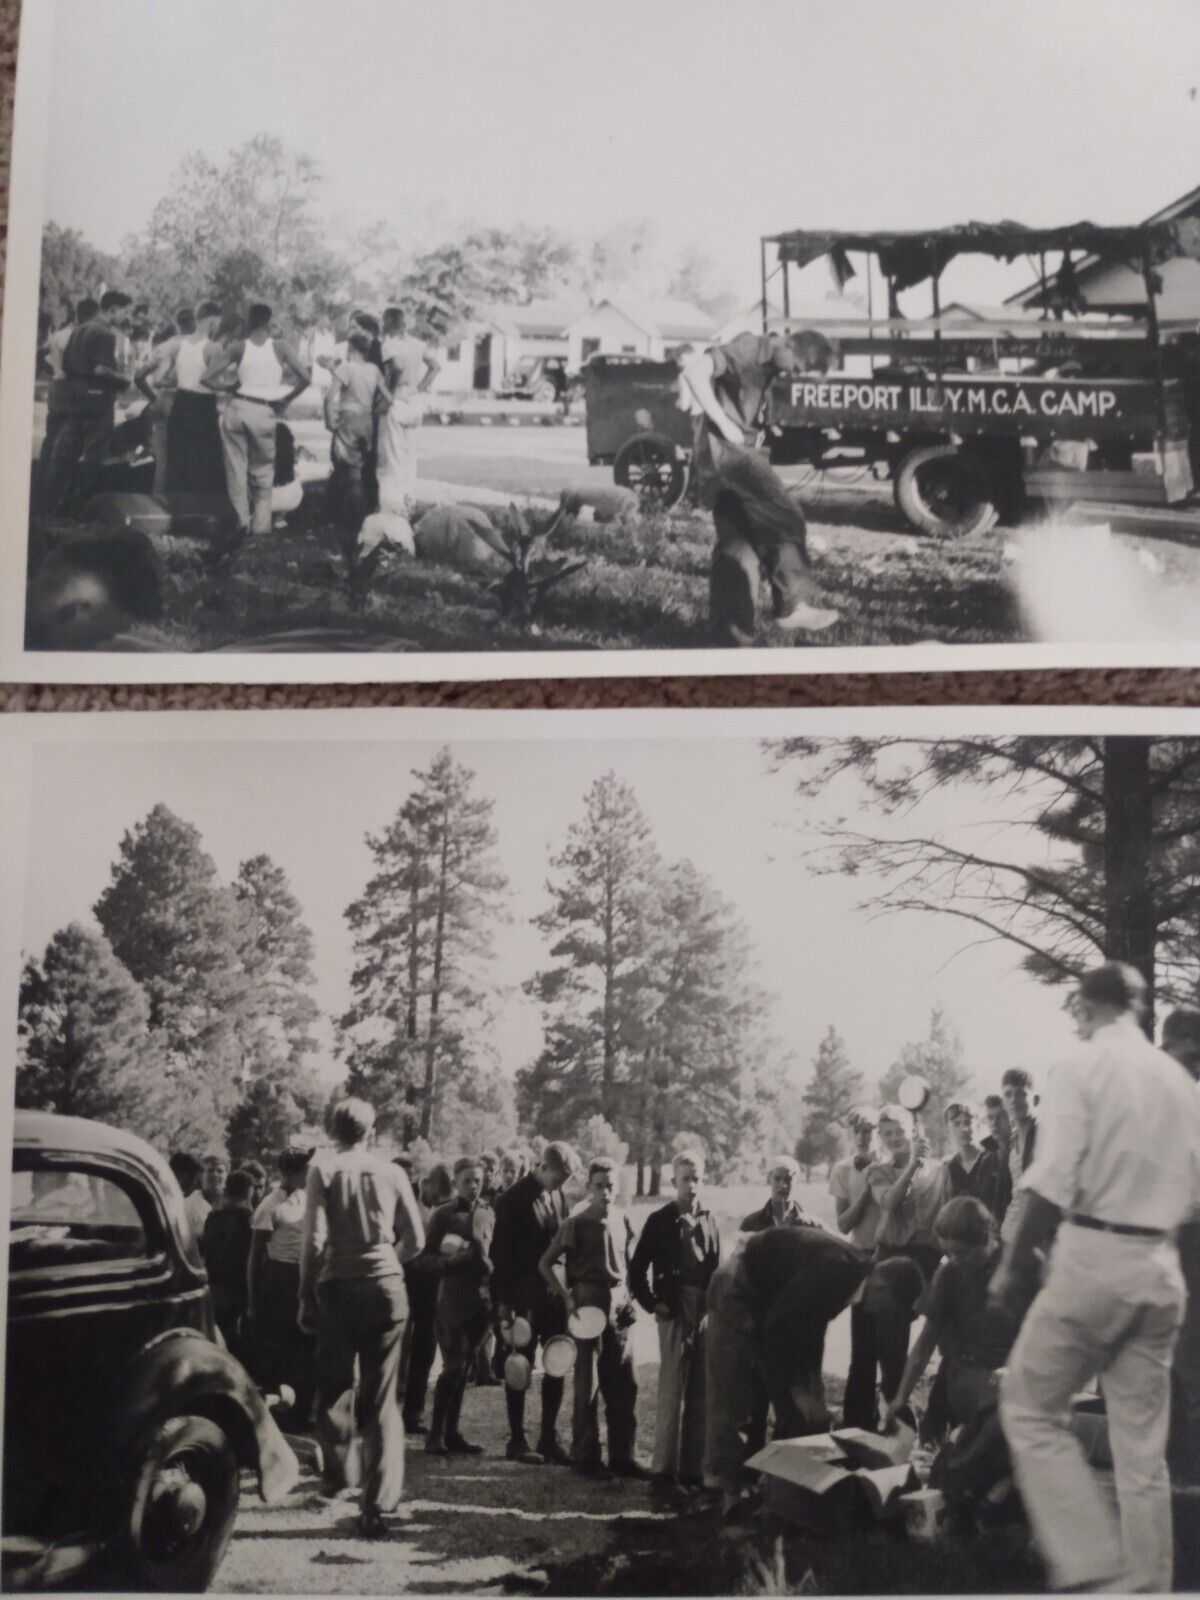 Two Freeport Illinois YMCA Camp antique photos